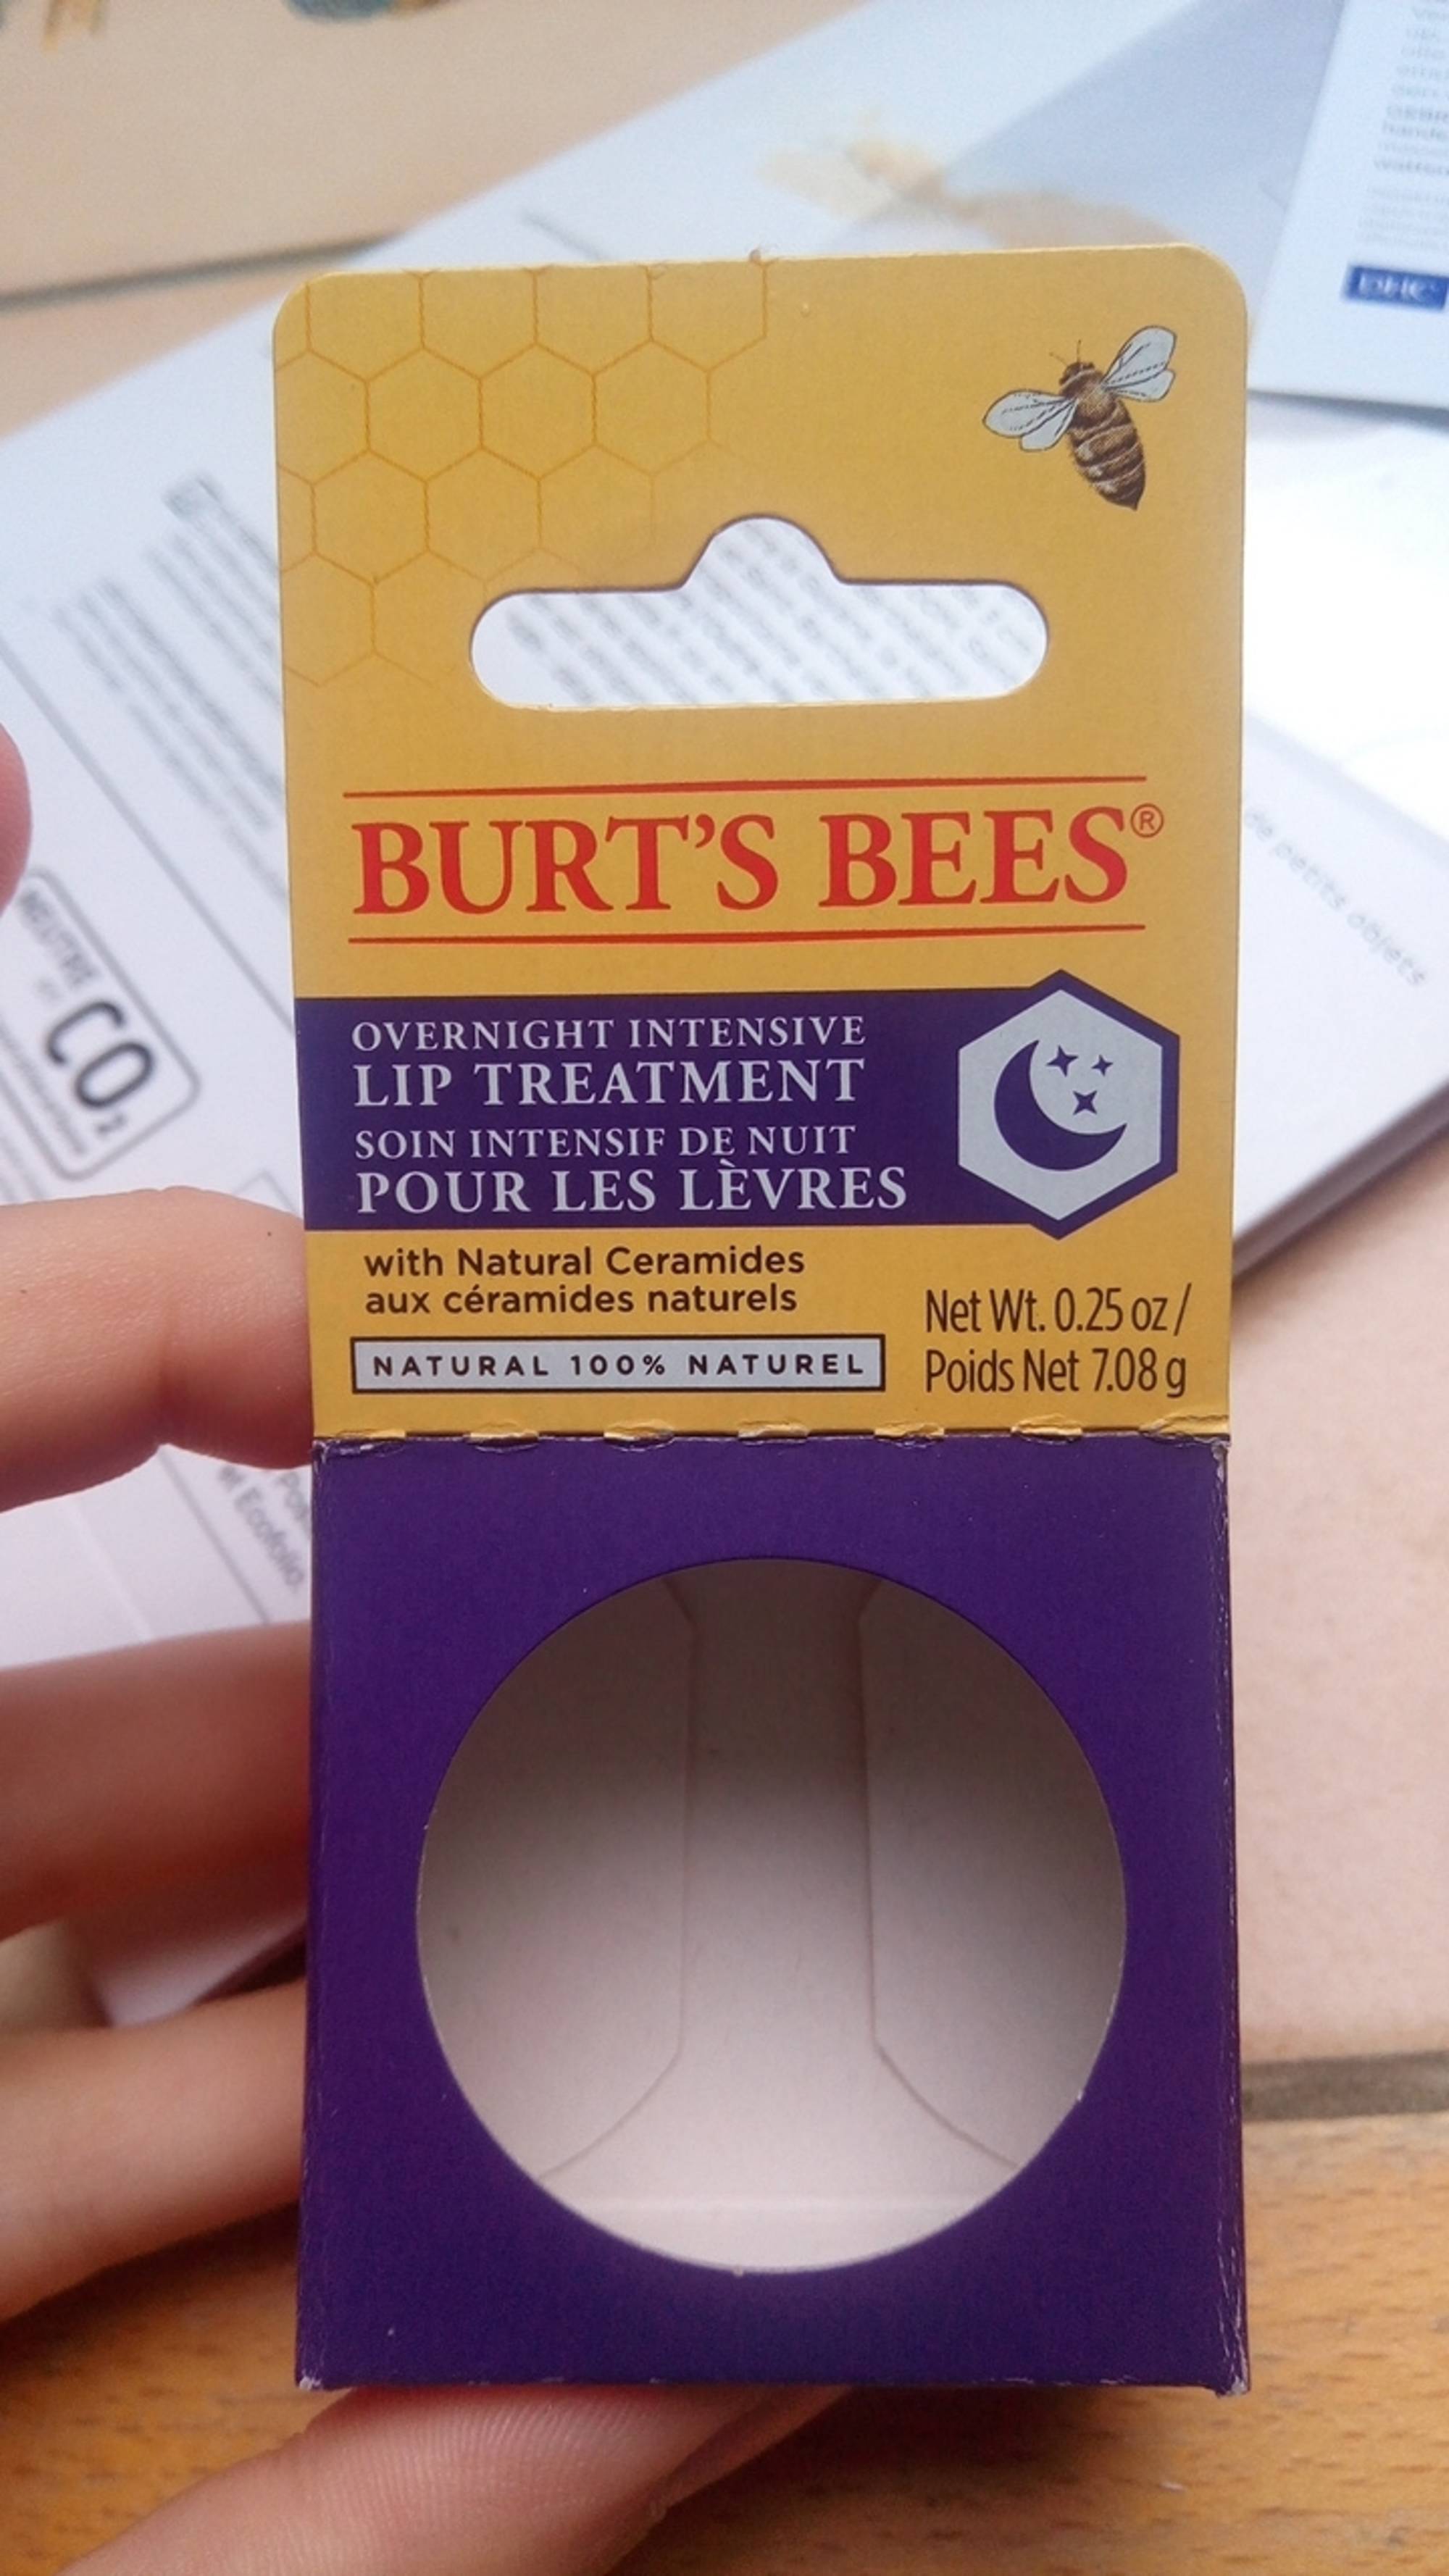 BURT'S BEES - Soin intensif de nuit pour les lèvres